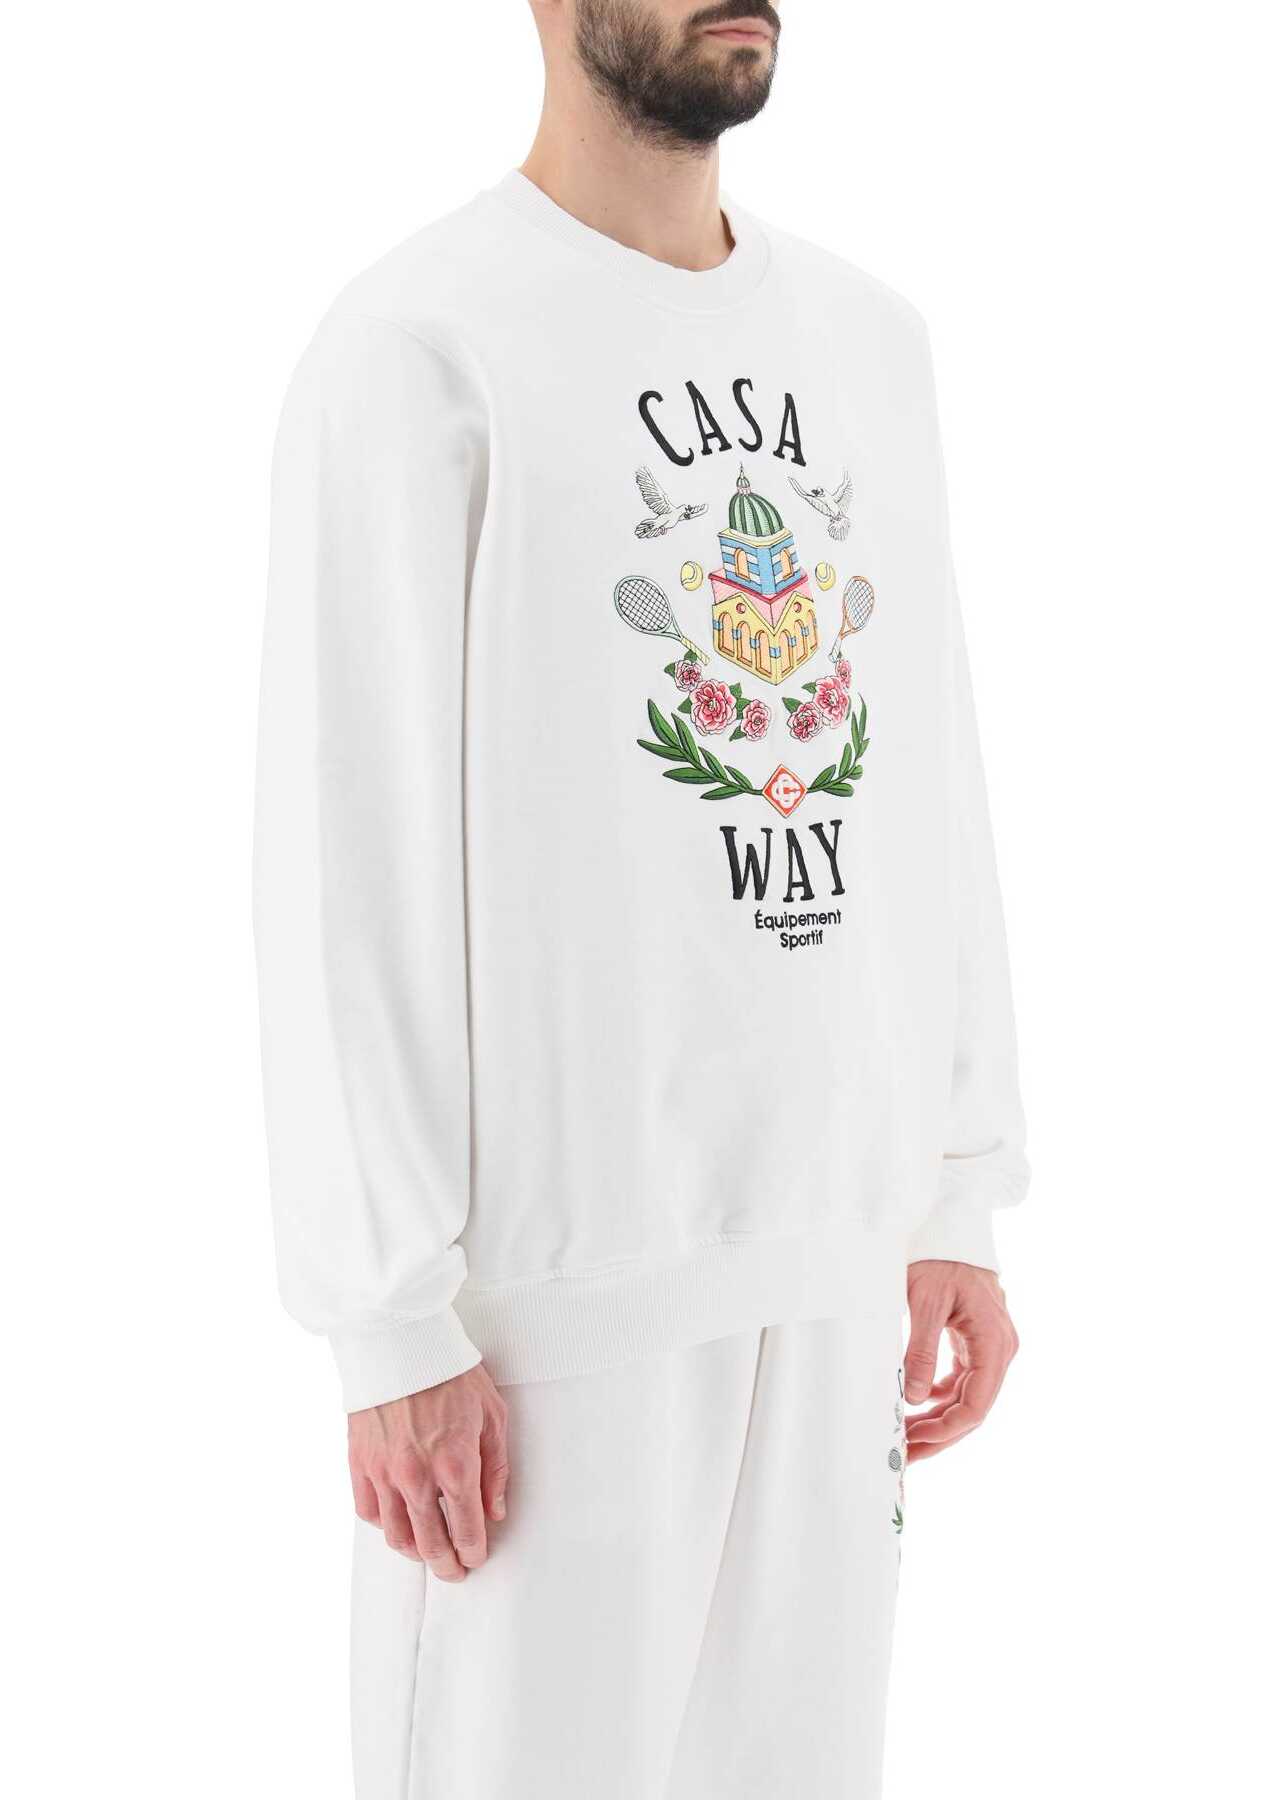 Casablanca Casa Way Crew-Neck Sweatshirt CASA WAY